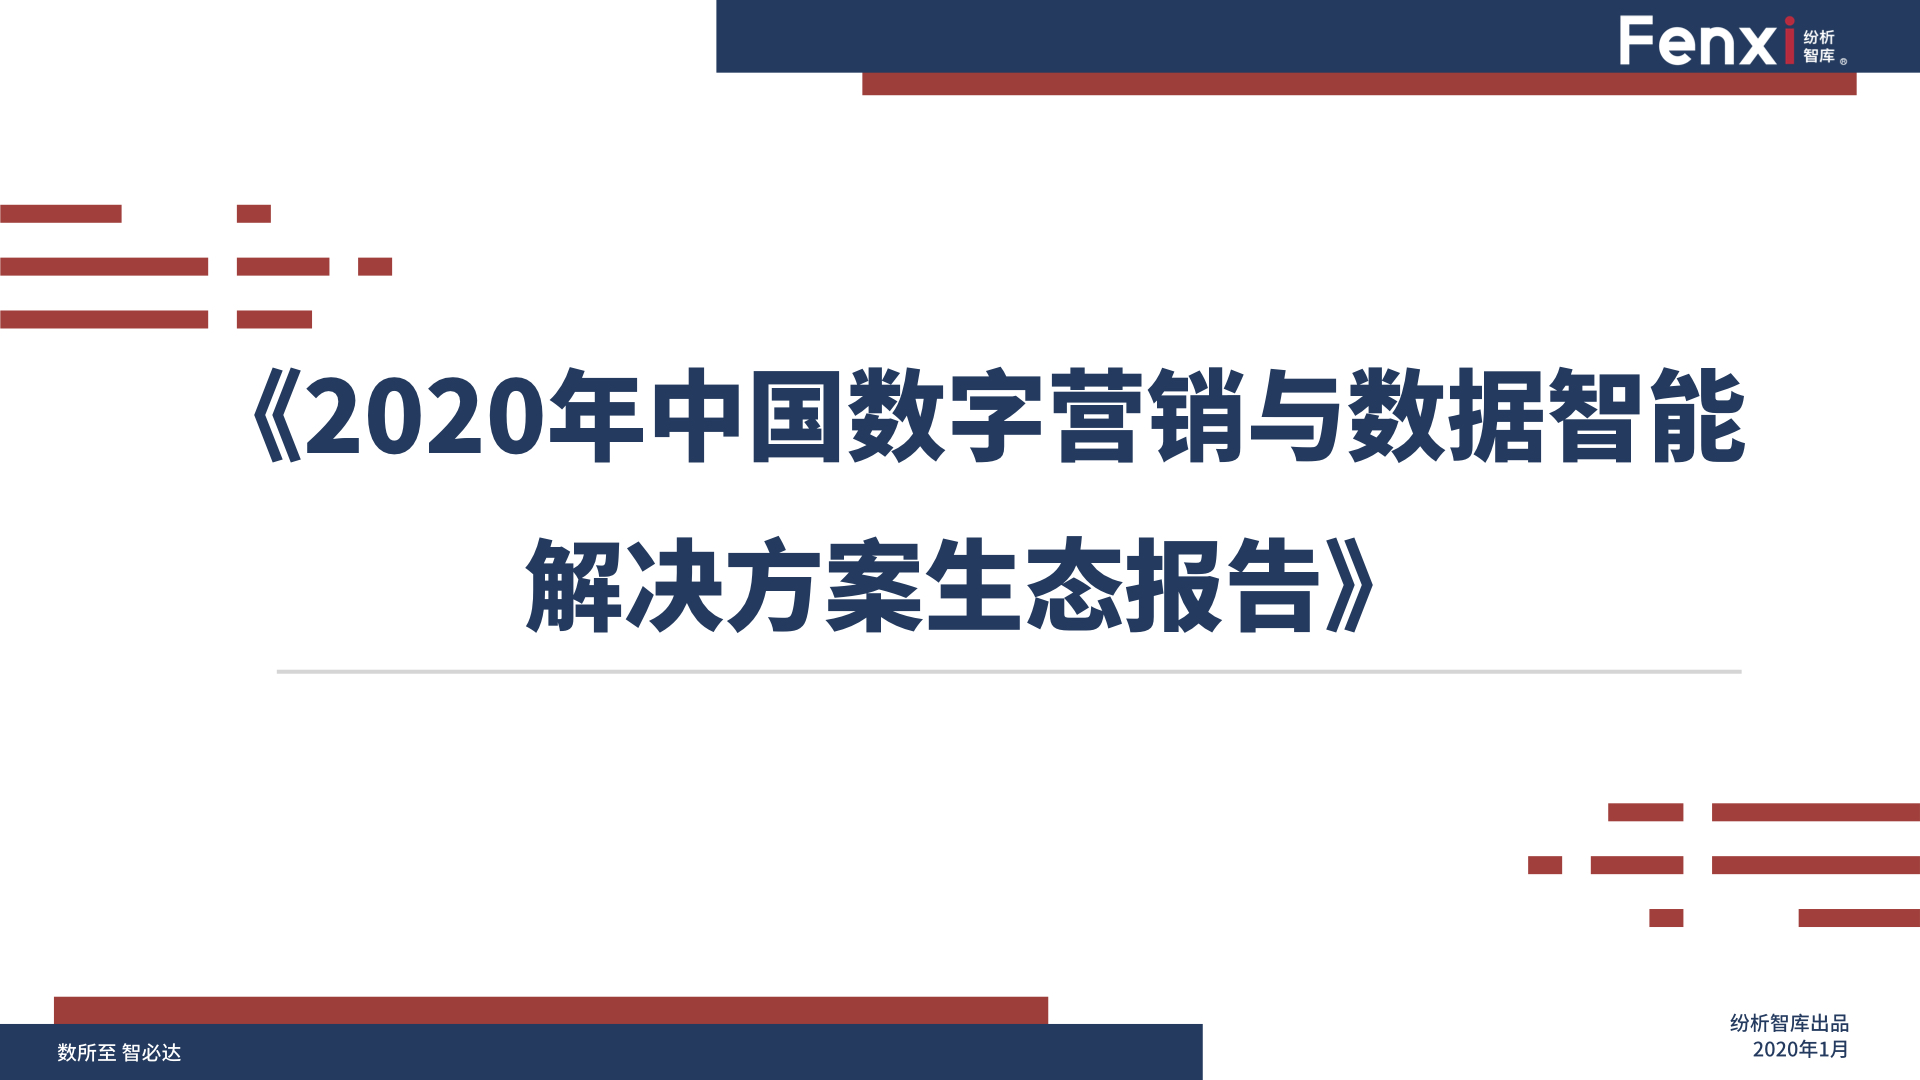 【V8】《2020年中国数字营销与数据智能解决方案生态图报告》0106.001.jpeg